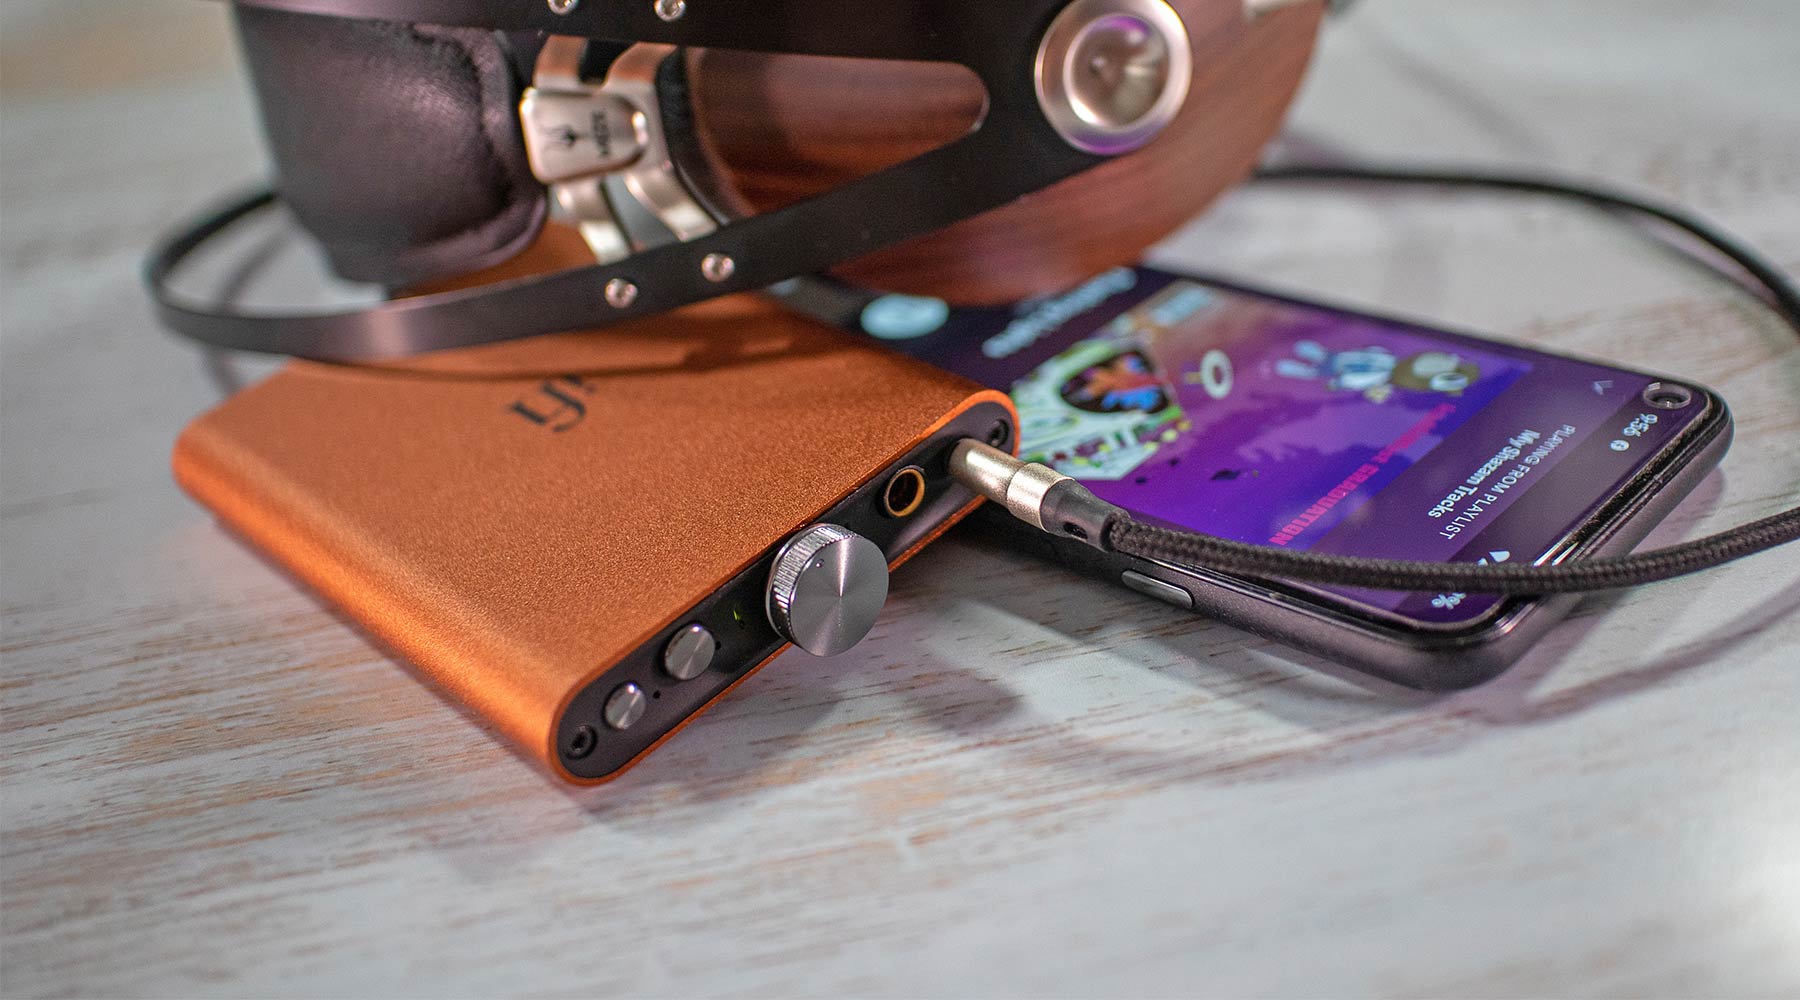 ¿Cómo hacer que los auriculares suenen más fuerte en tu iPhone, Android o PC?